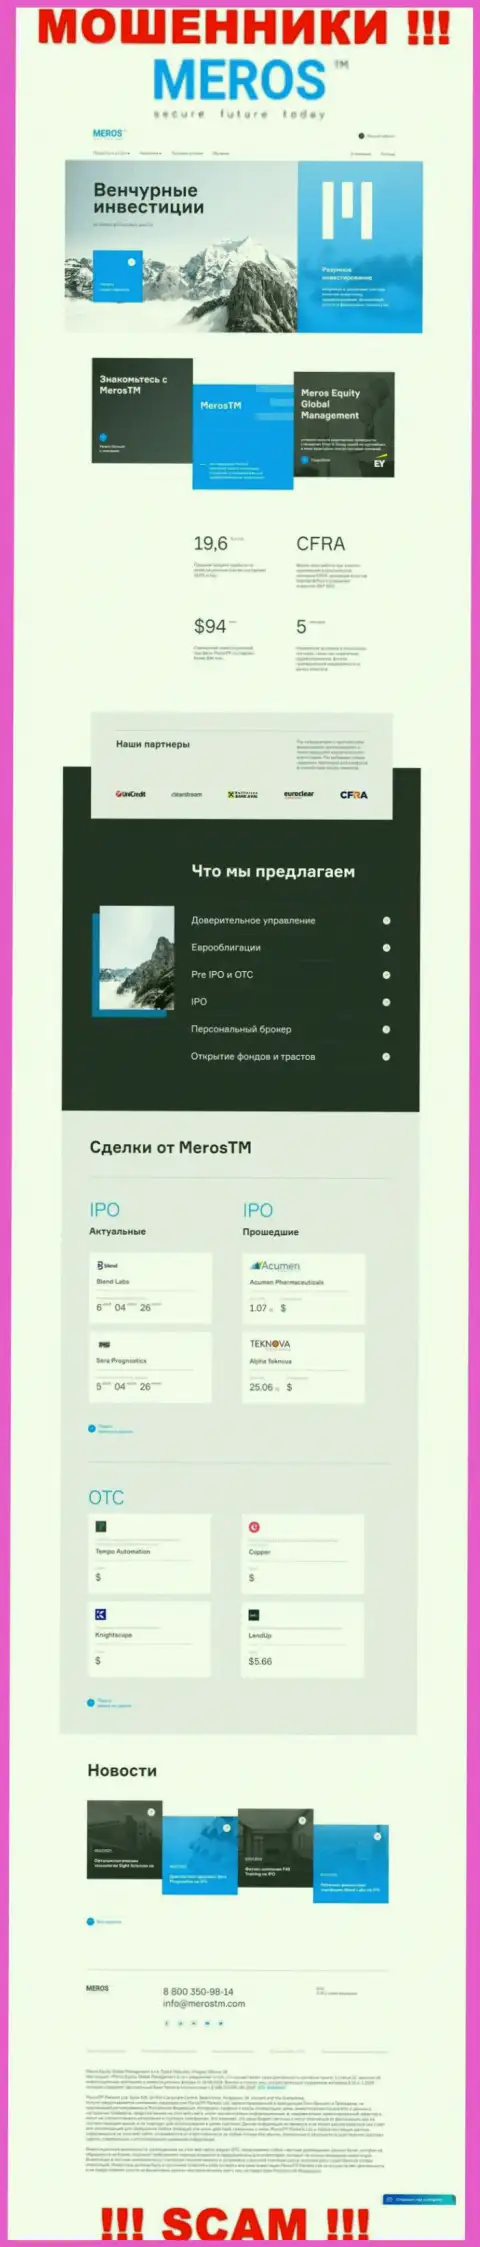 Обзор официального веб-сервиса мошенников MerosTM